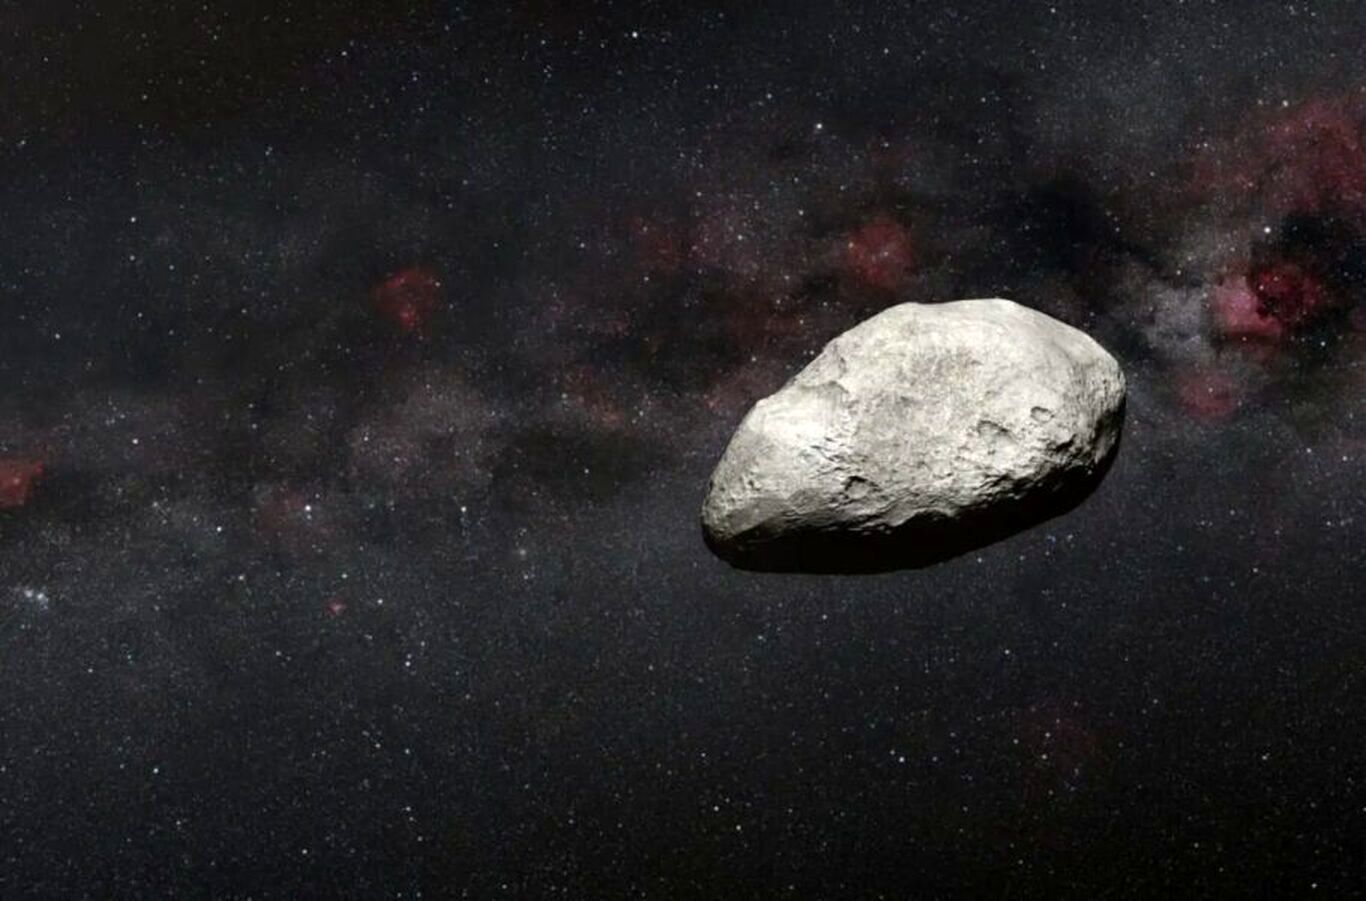 تلسکوپ جیمز وب یک سیارک کوچک را از فاصله ۱۰۰ میلیون کیلومتری مشاهده کرد